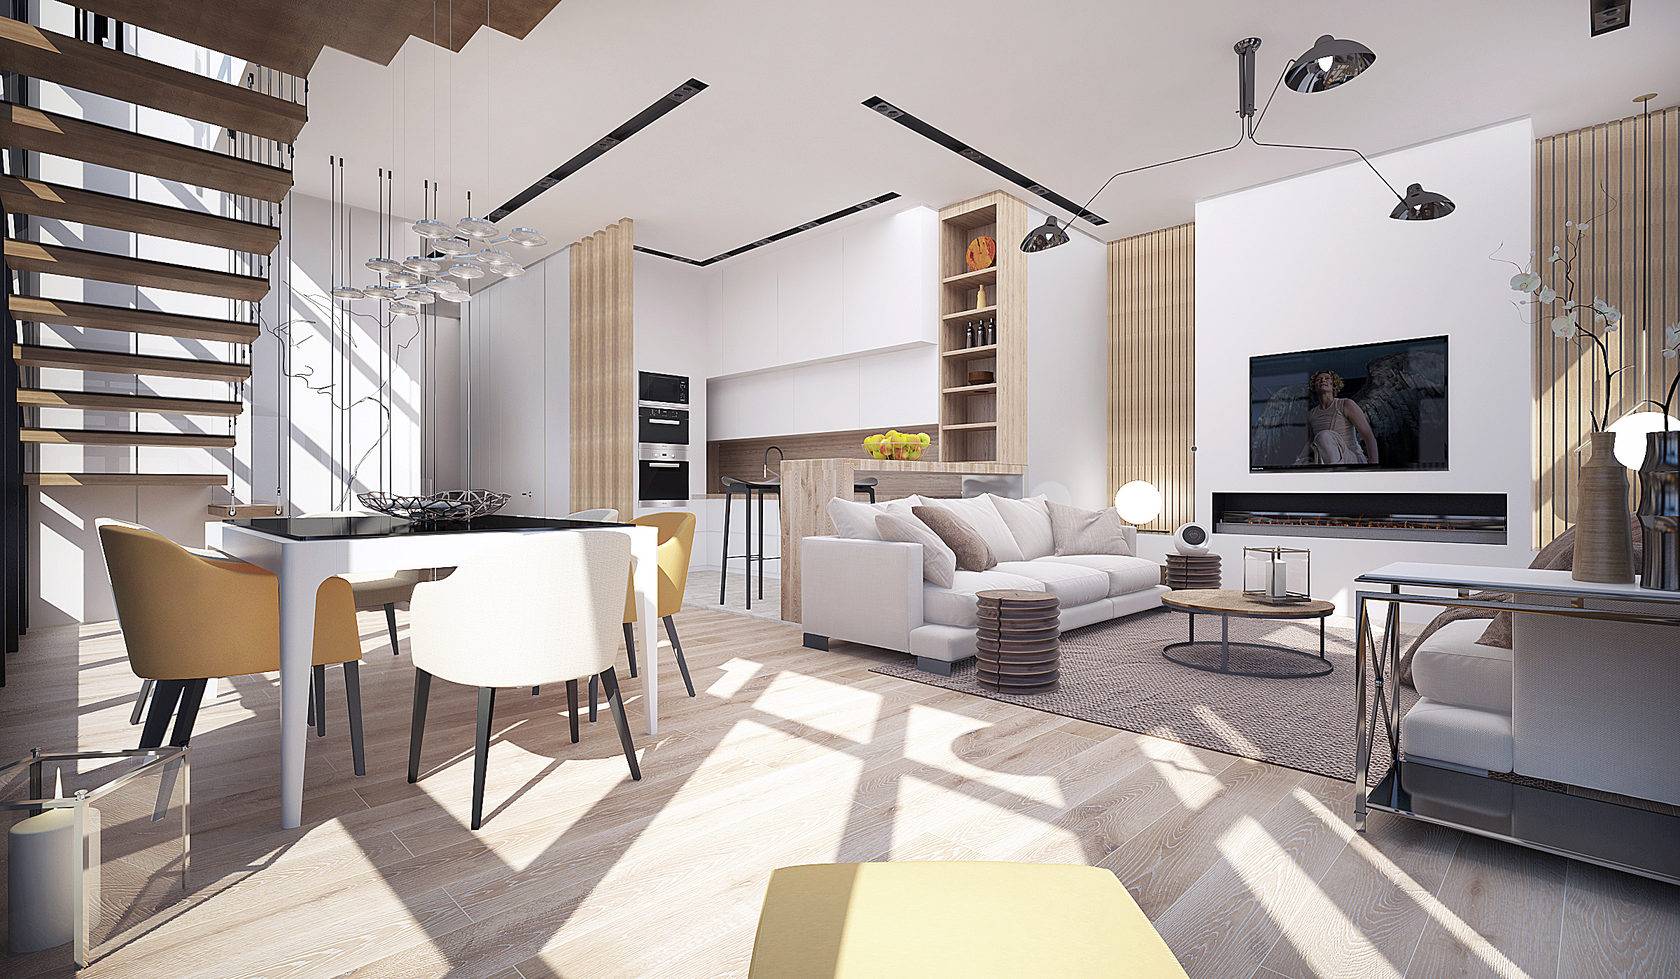 После разработки дизайн-проекта специалисты подготовят визуализацию будущего интерьера квартира